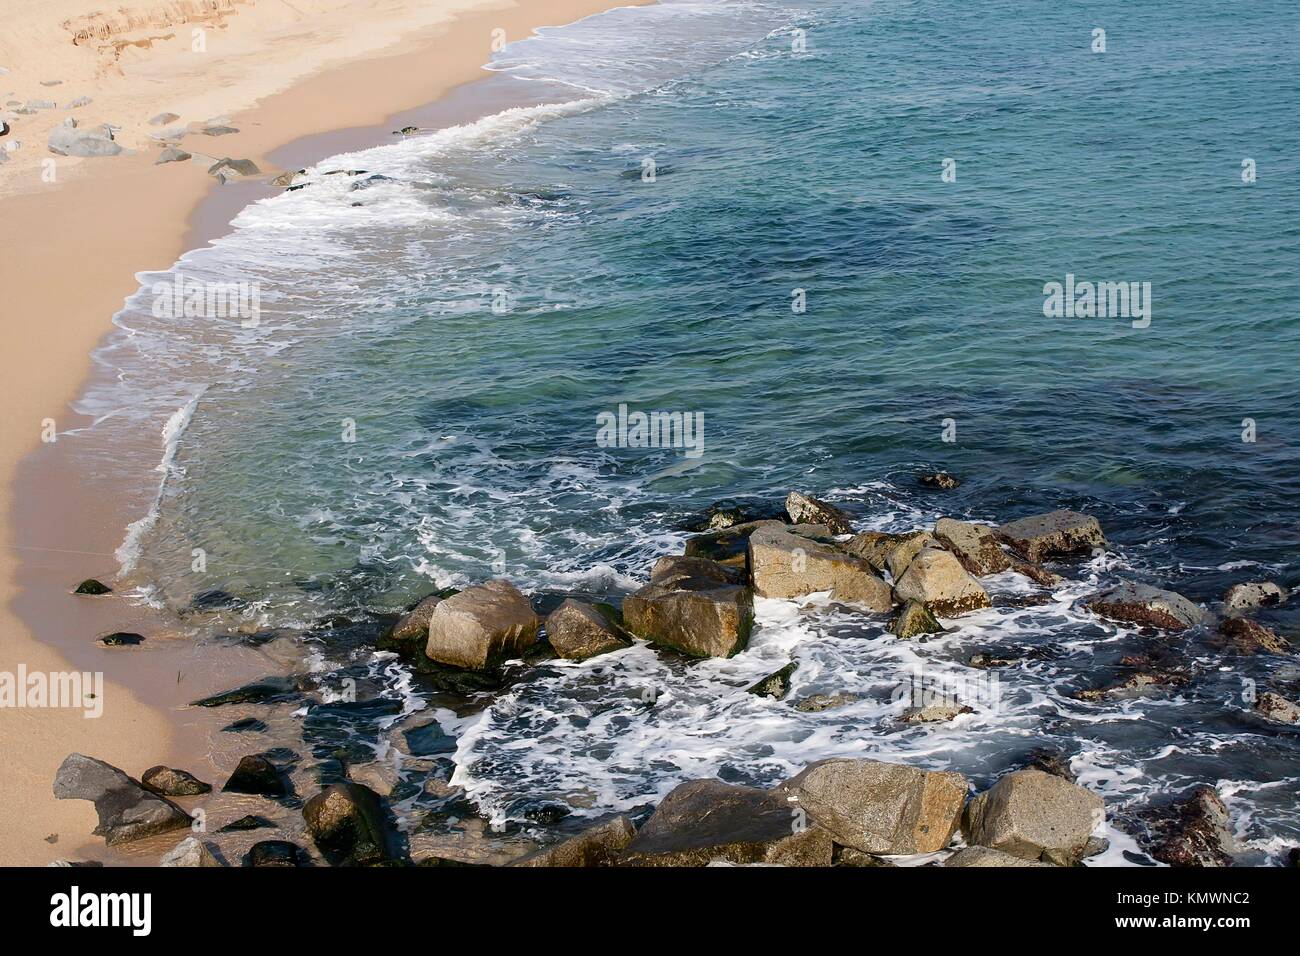 Beach, Badalona, Barcelona province, Catalonia, Spain Stock Photo